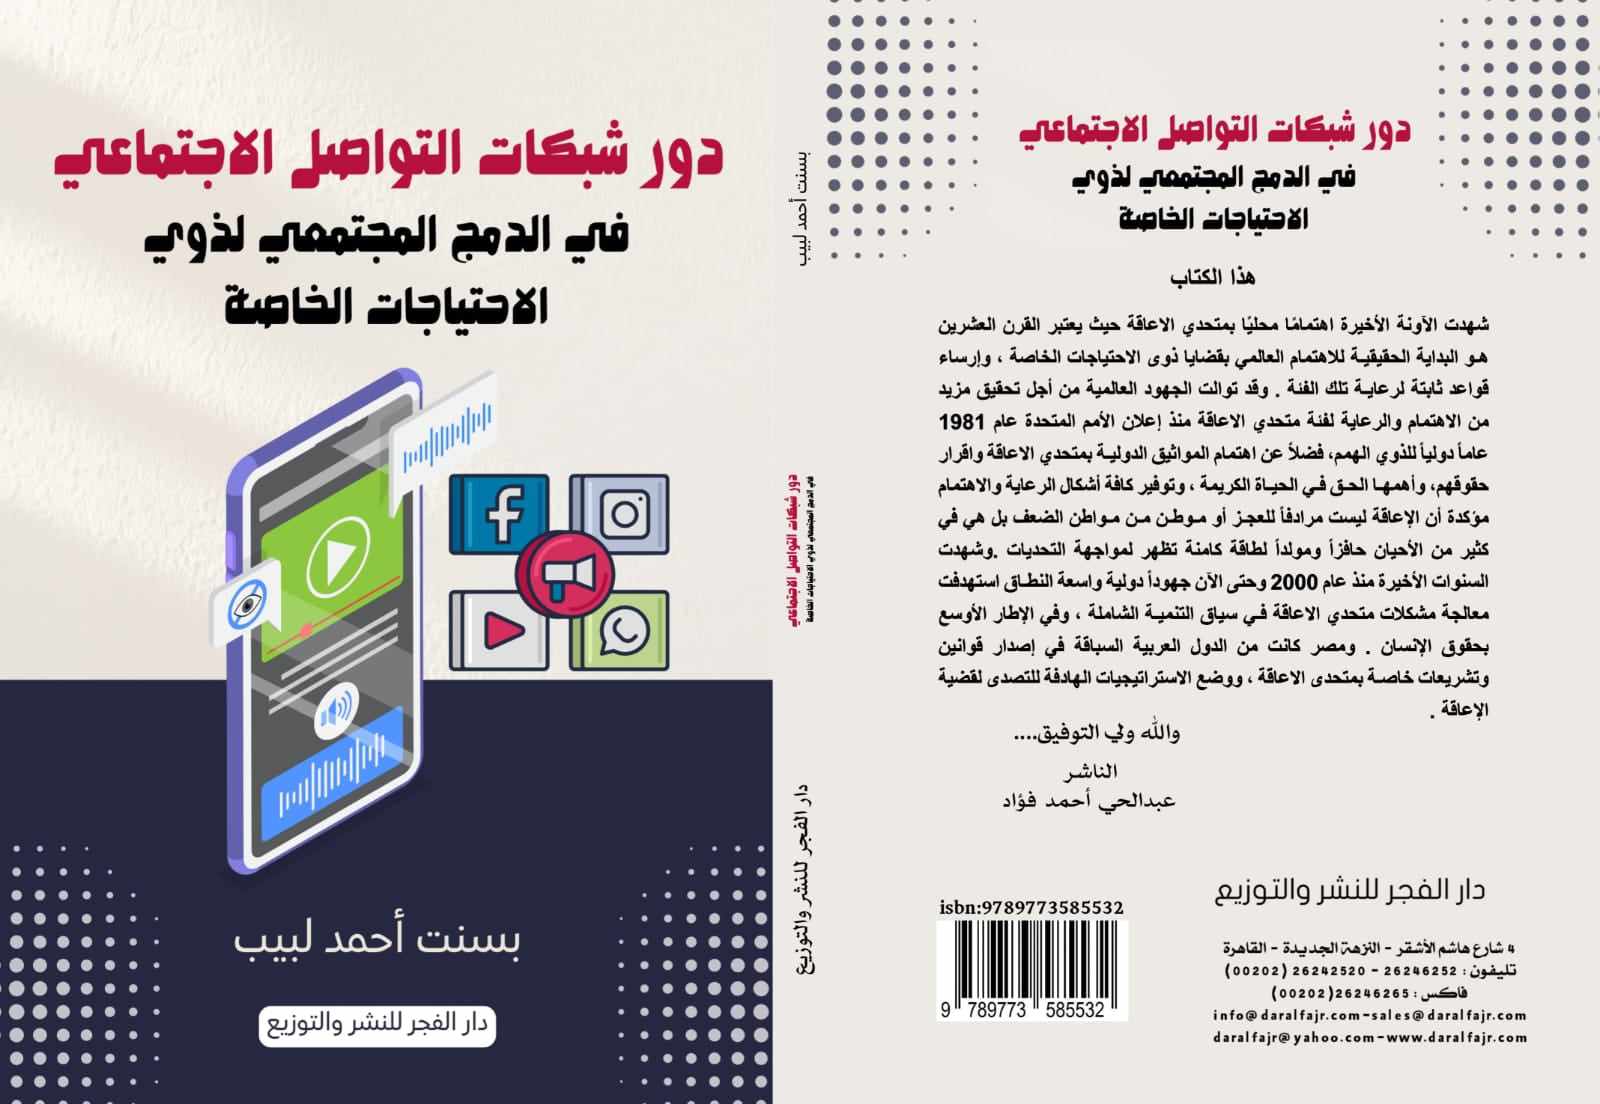 شبكات التواصل الاجتماعي ودمج متحدي الاعاقة في كتاب لـ «بسنت أحمد»